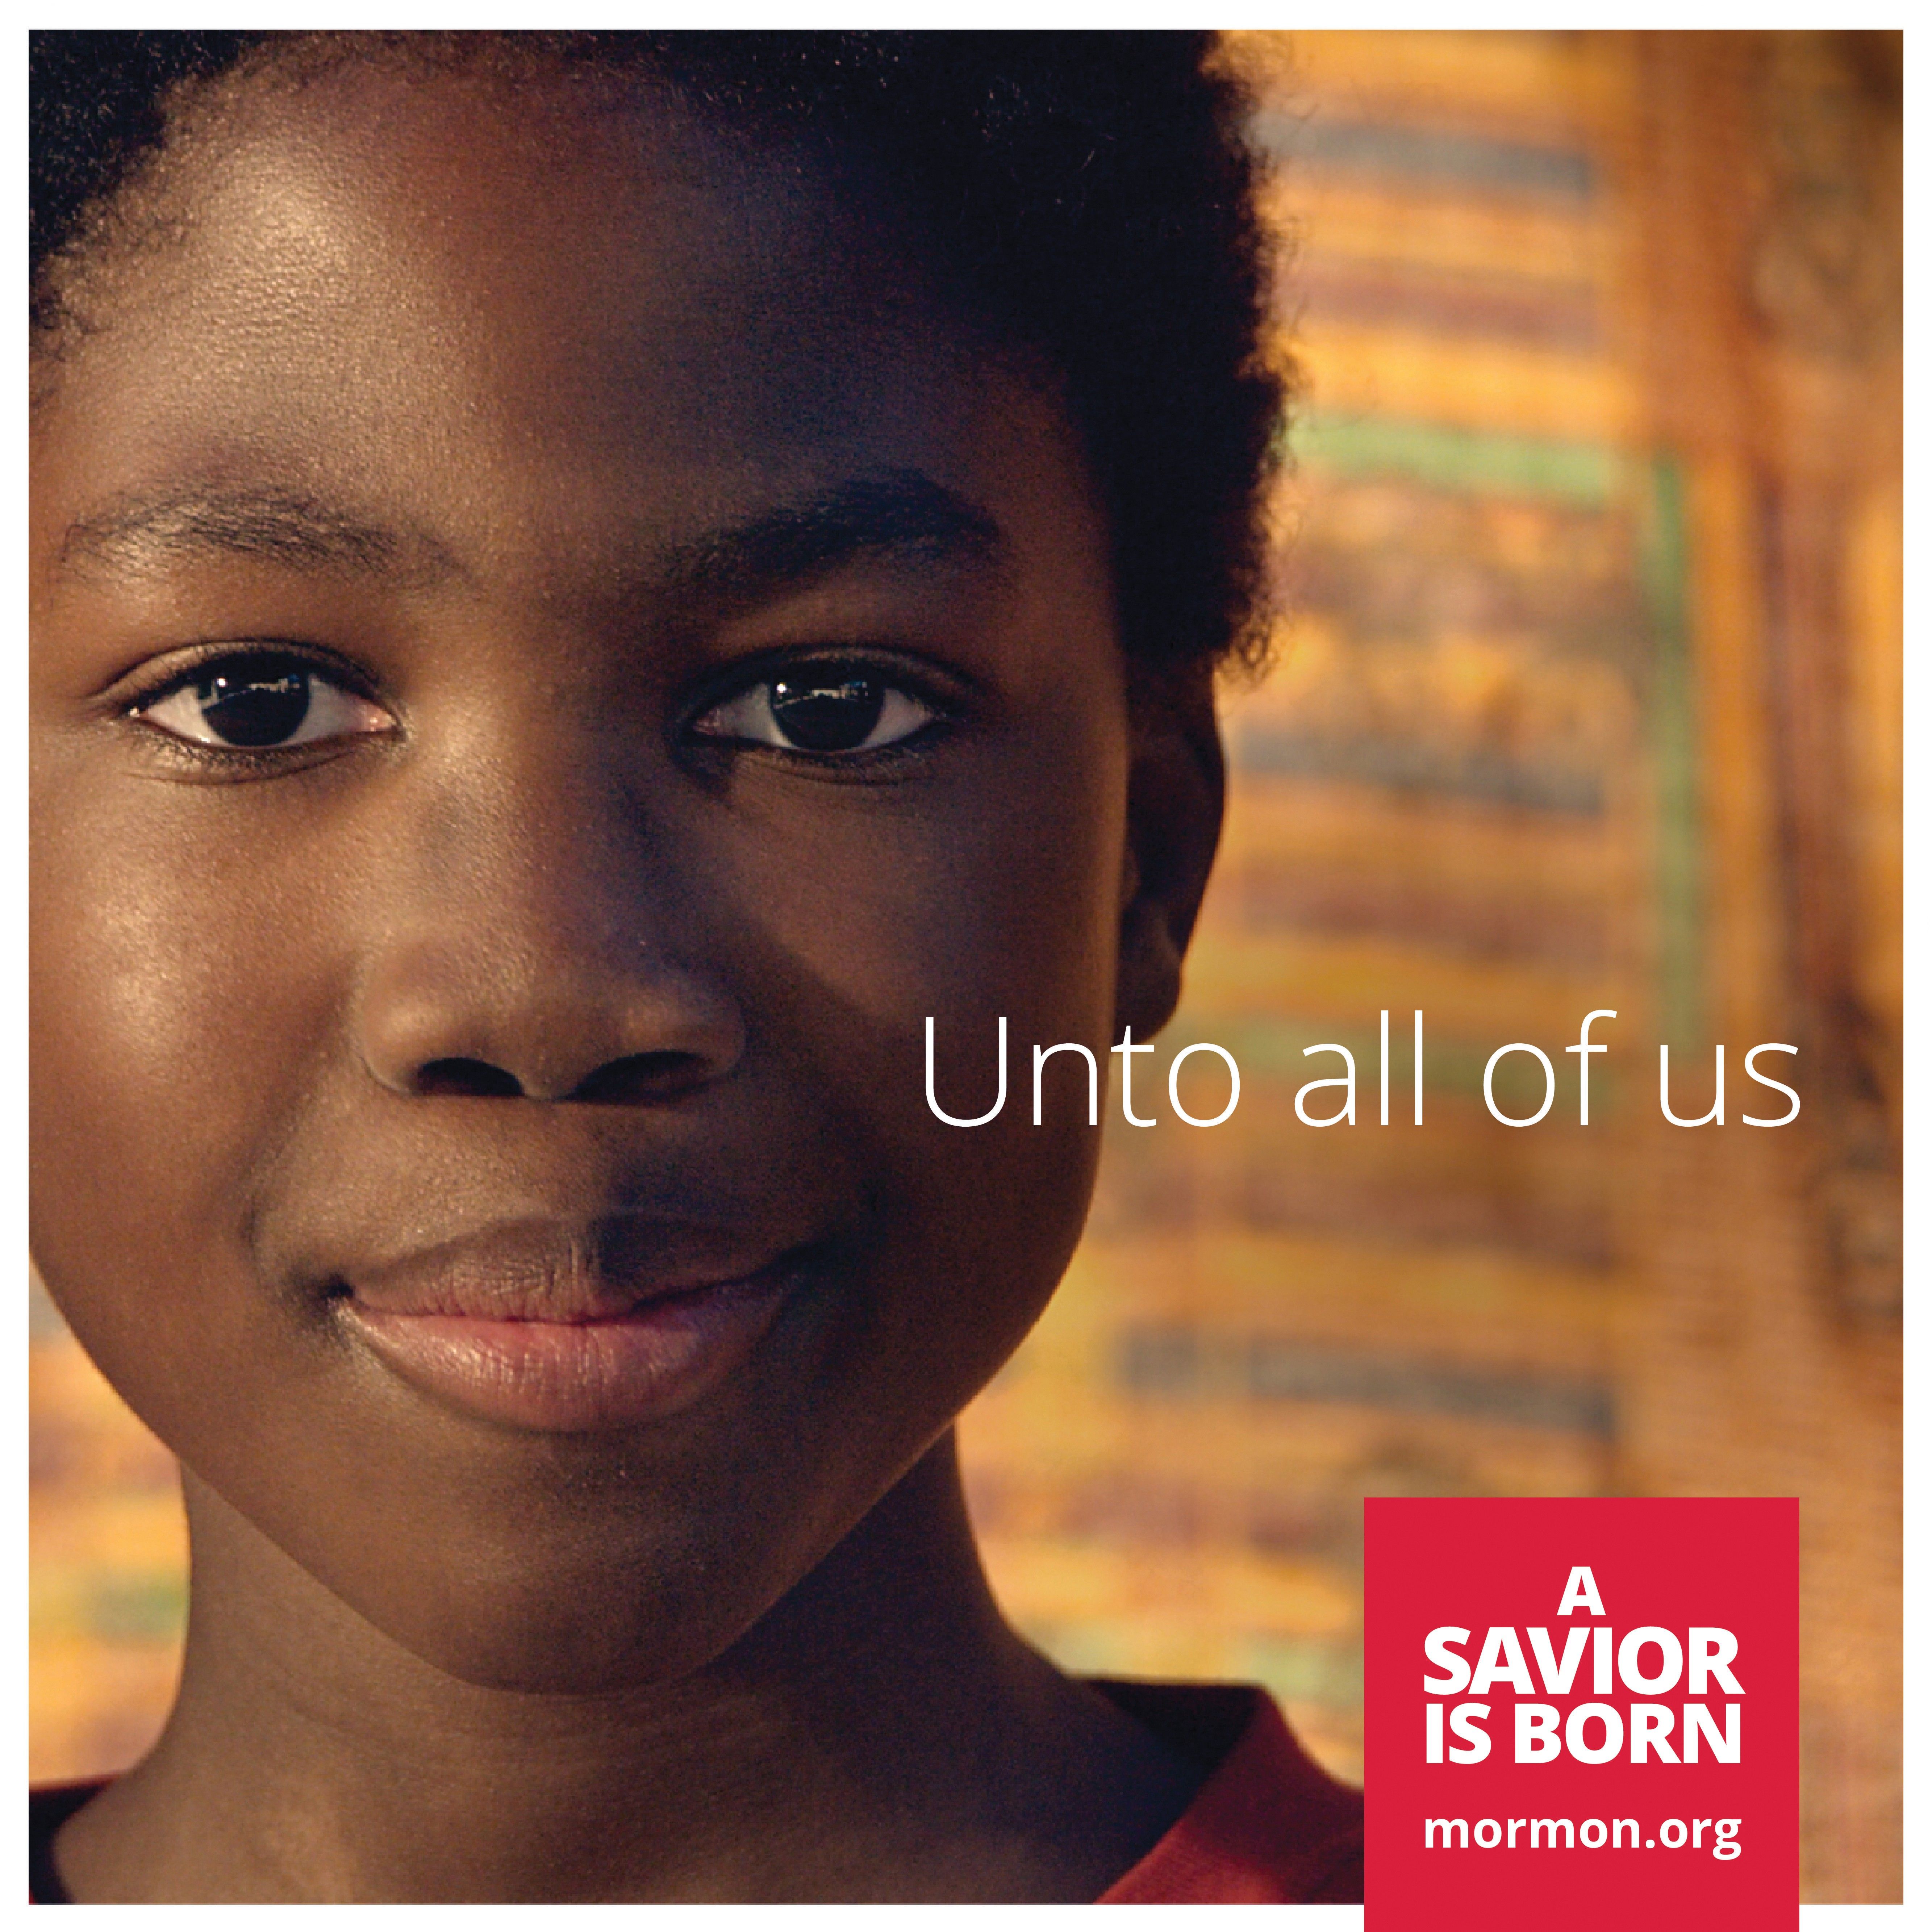 “Unto all of us.” —mormon.org, “A Savior Is Born”